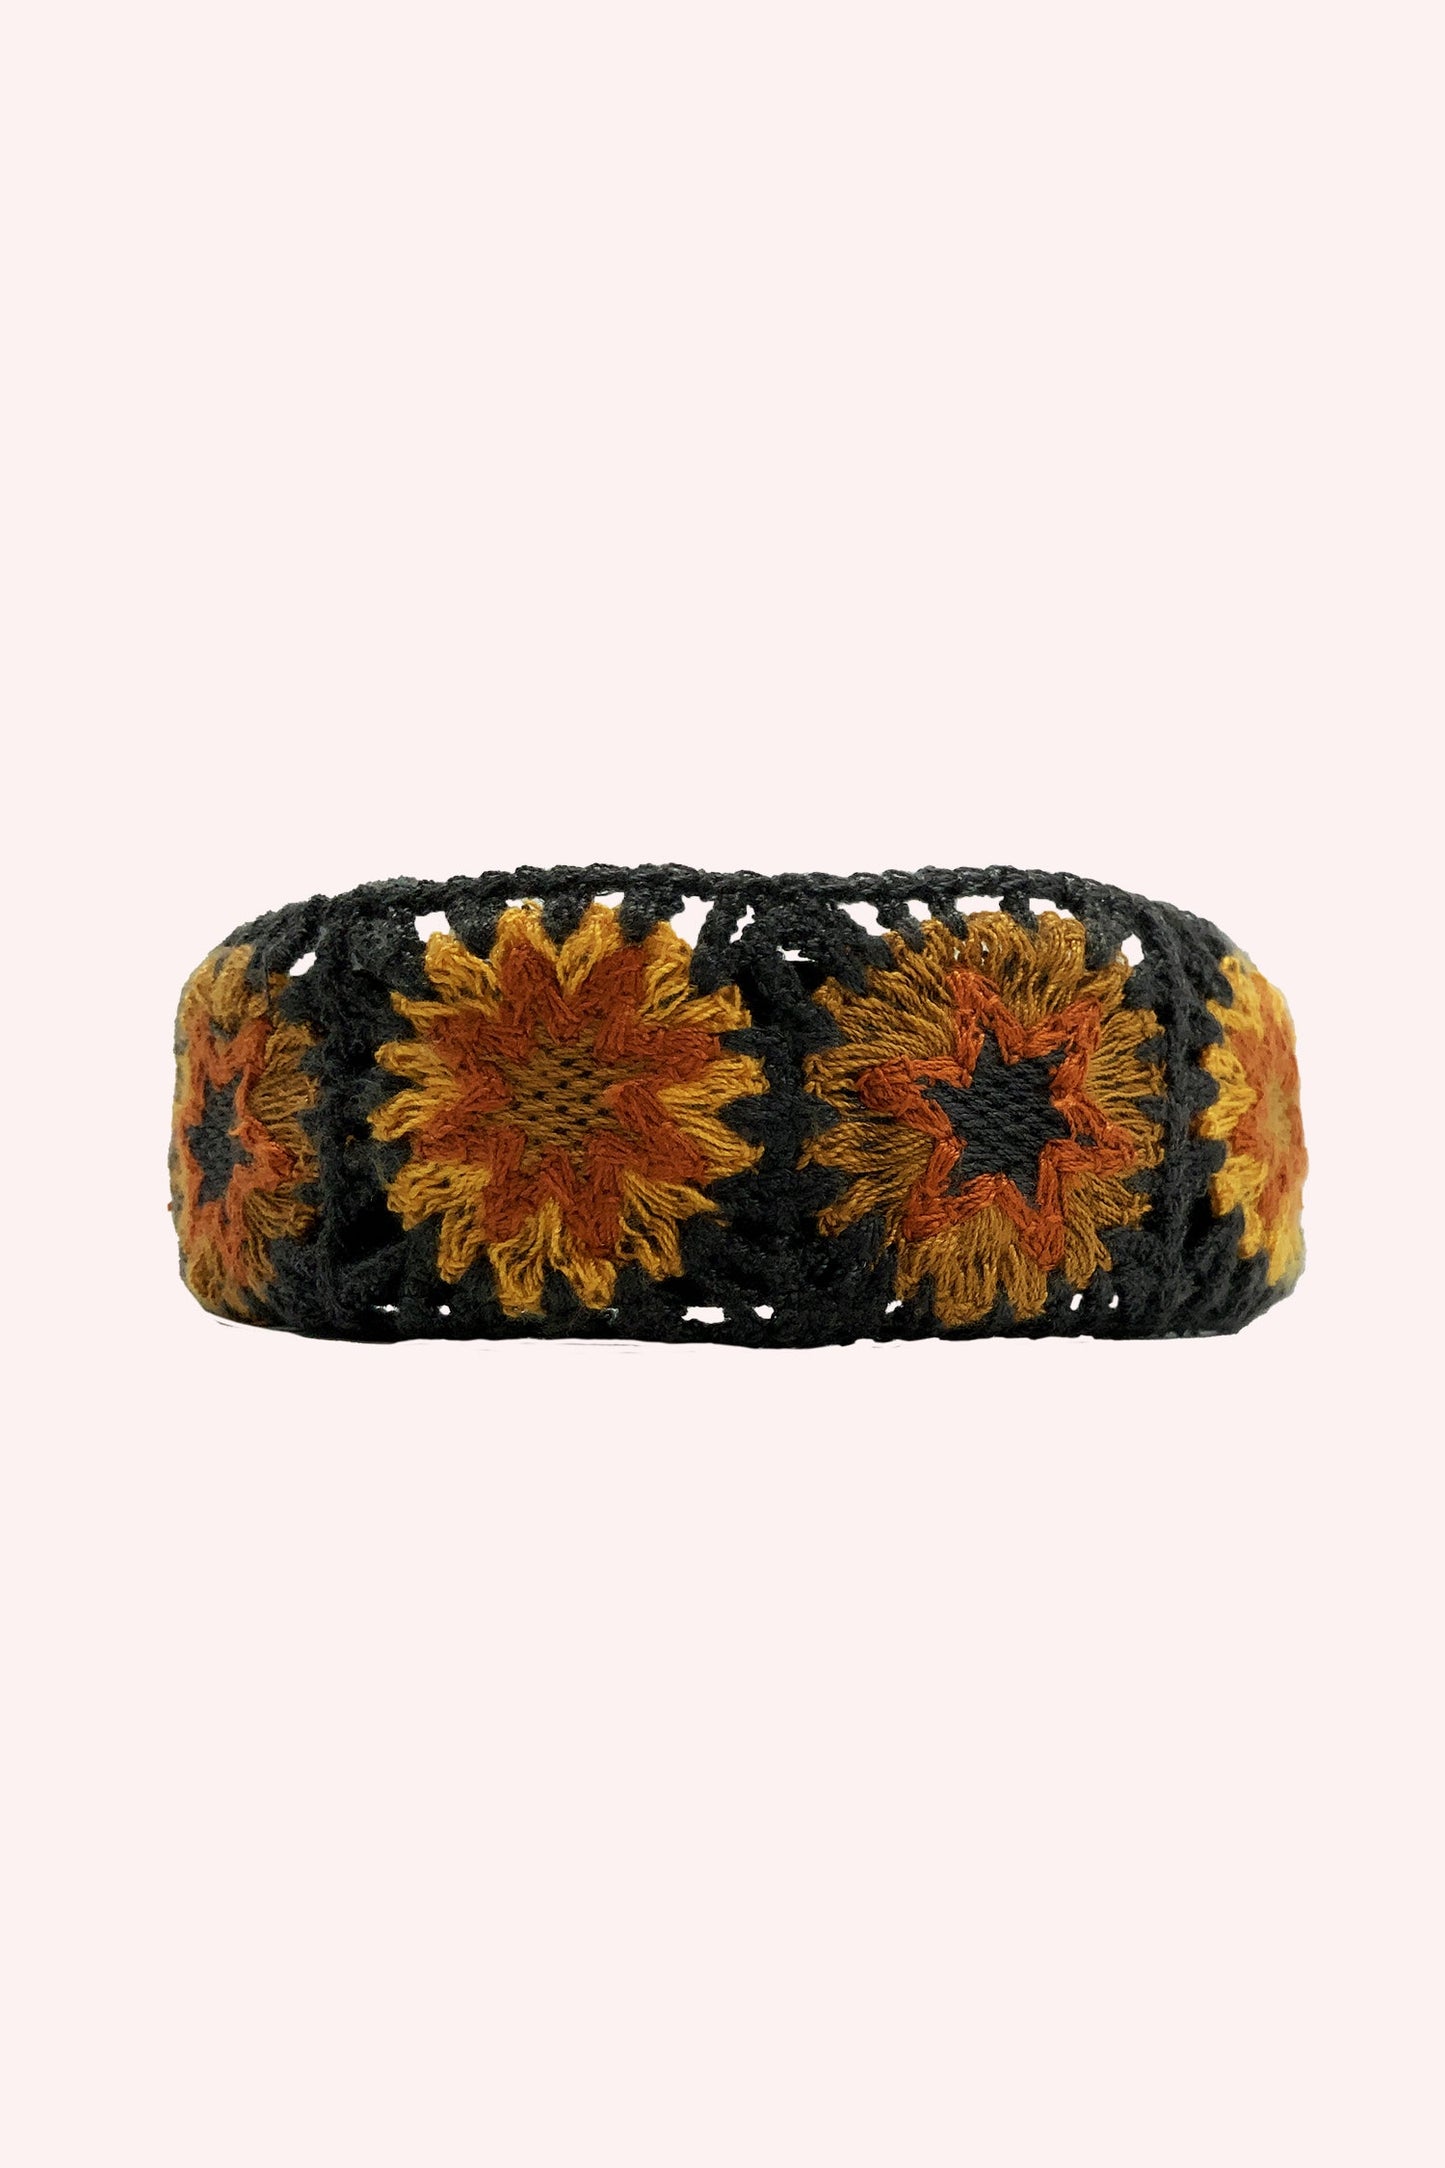 Floral Crochet Play Headband Orange Multi on black